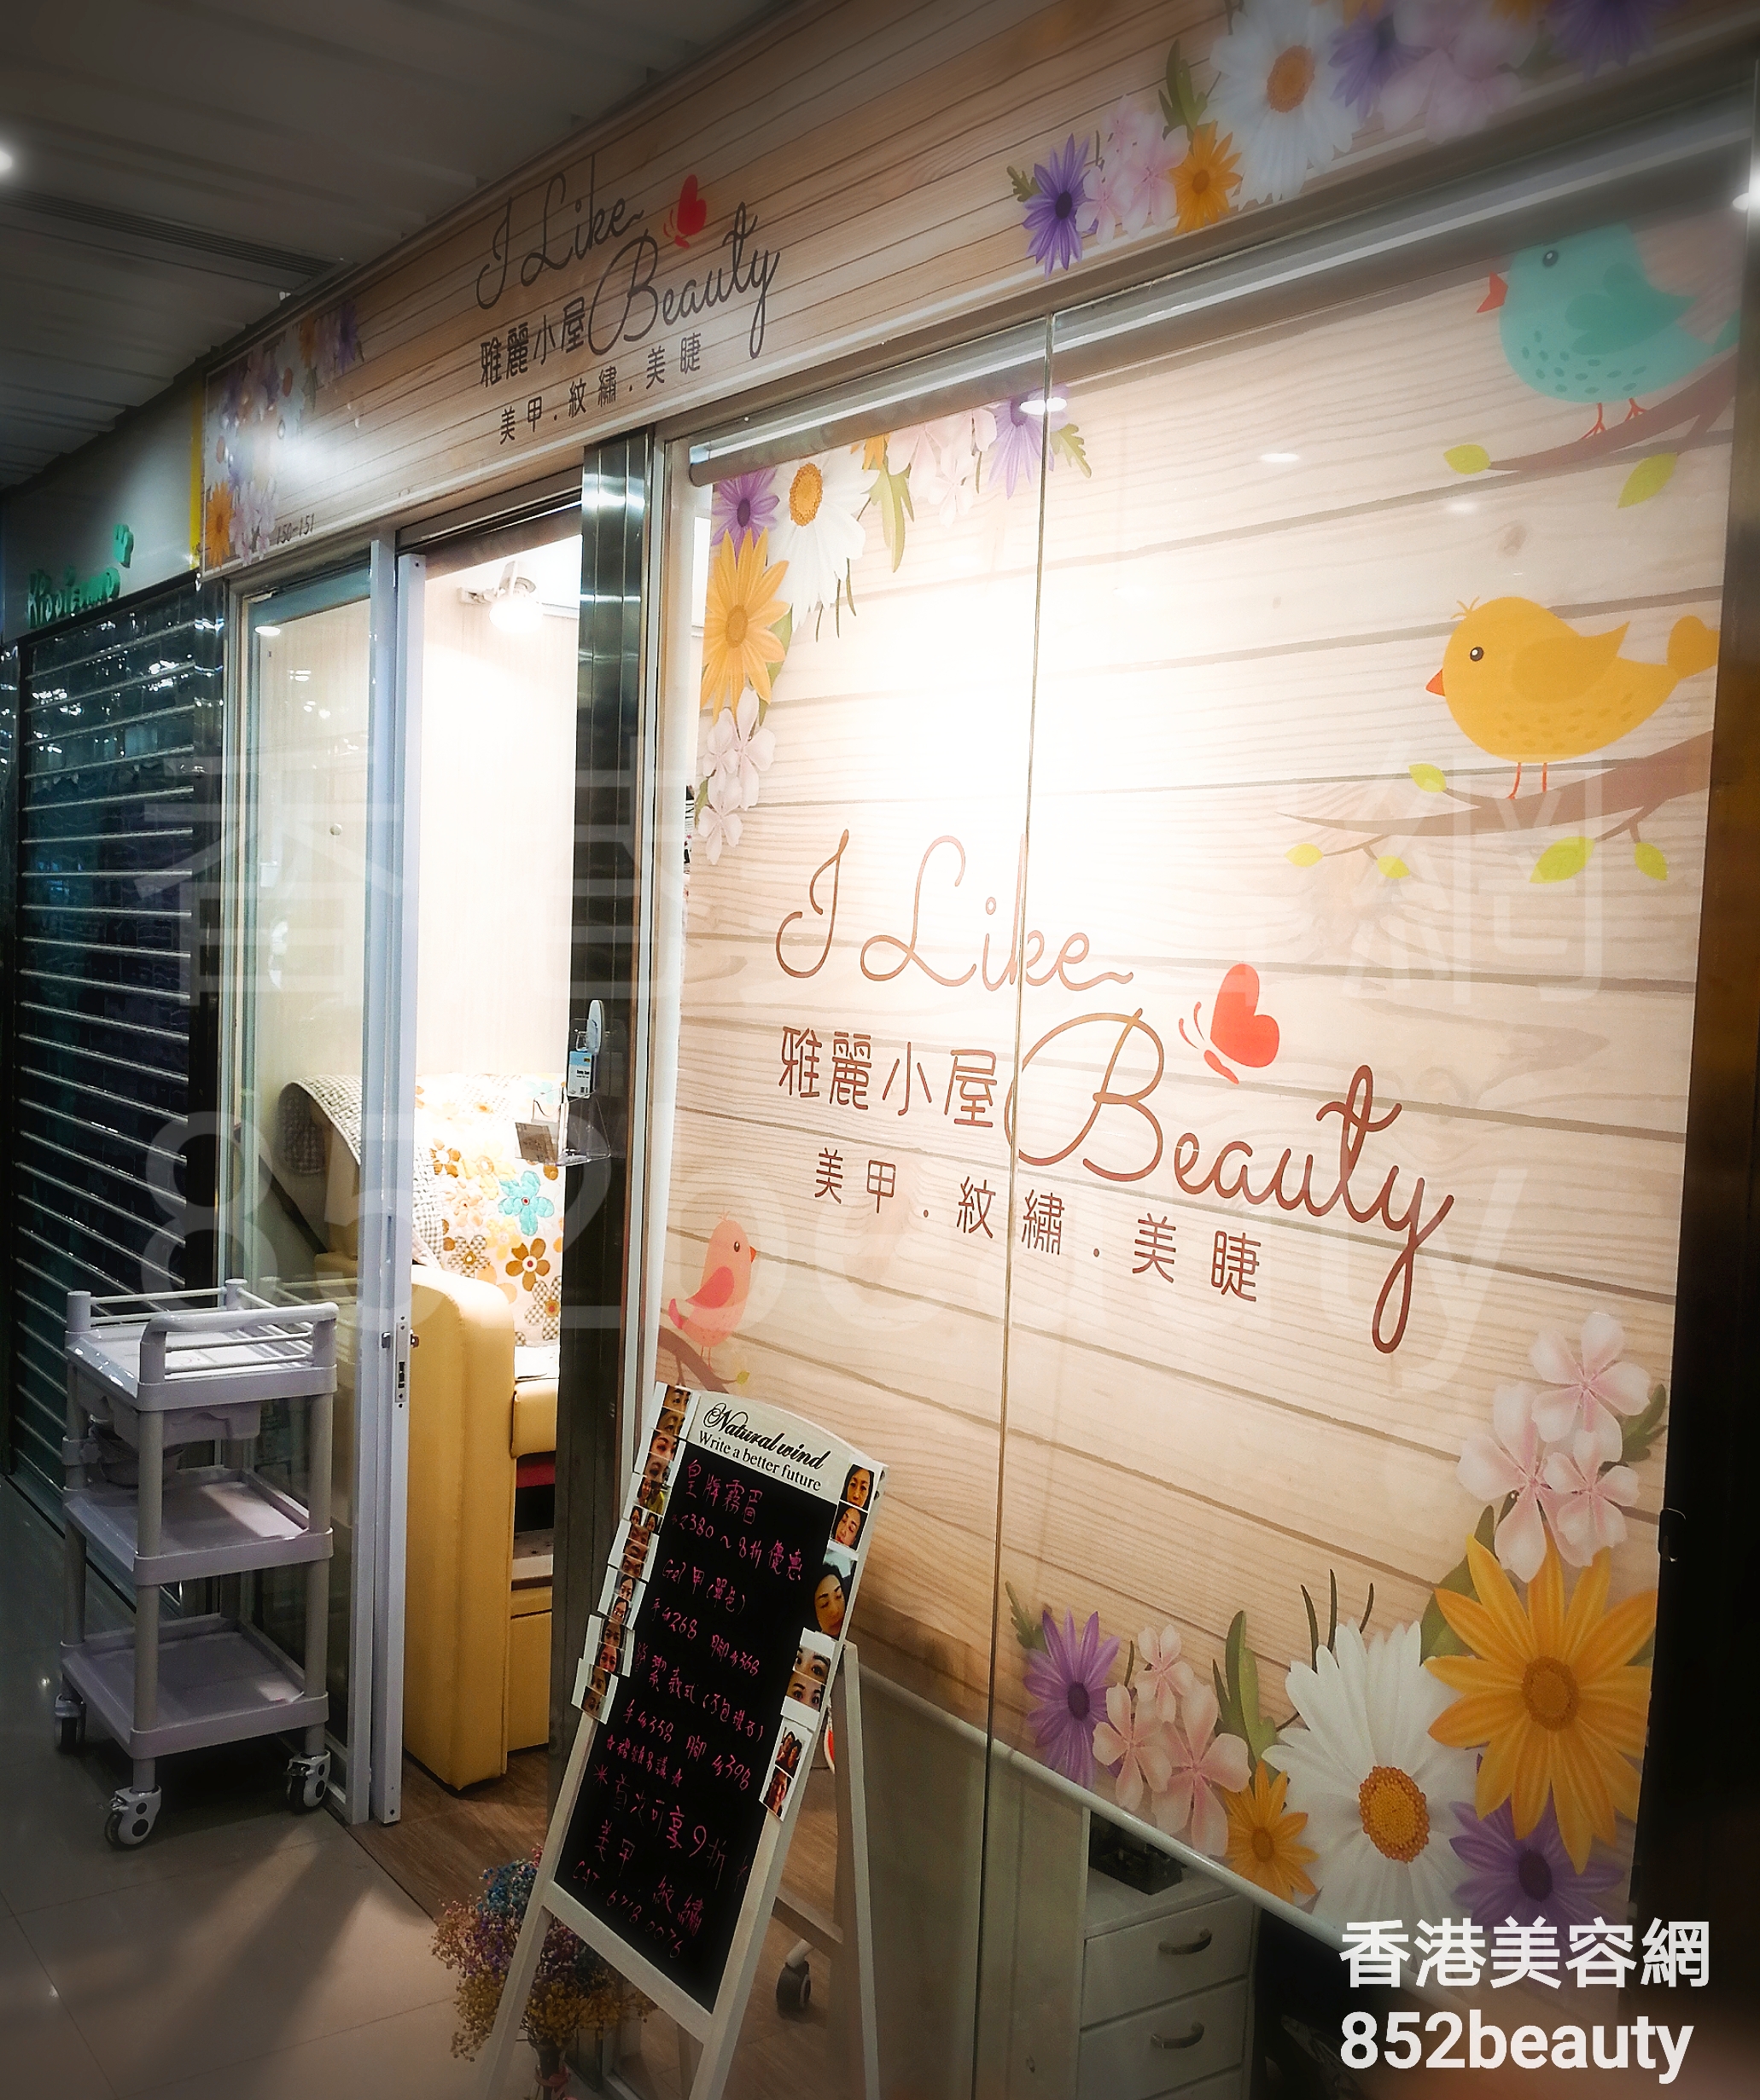 香港美容網 Hong Kong Beauty Salon 美容院 / 美容師: 雅麗小屋 I Like Beauty